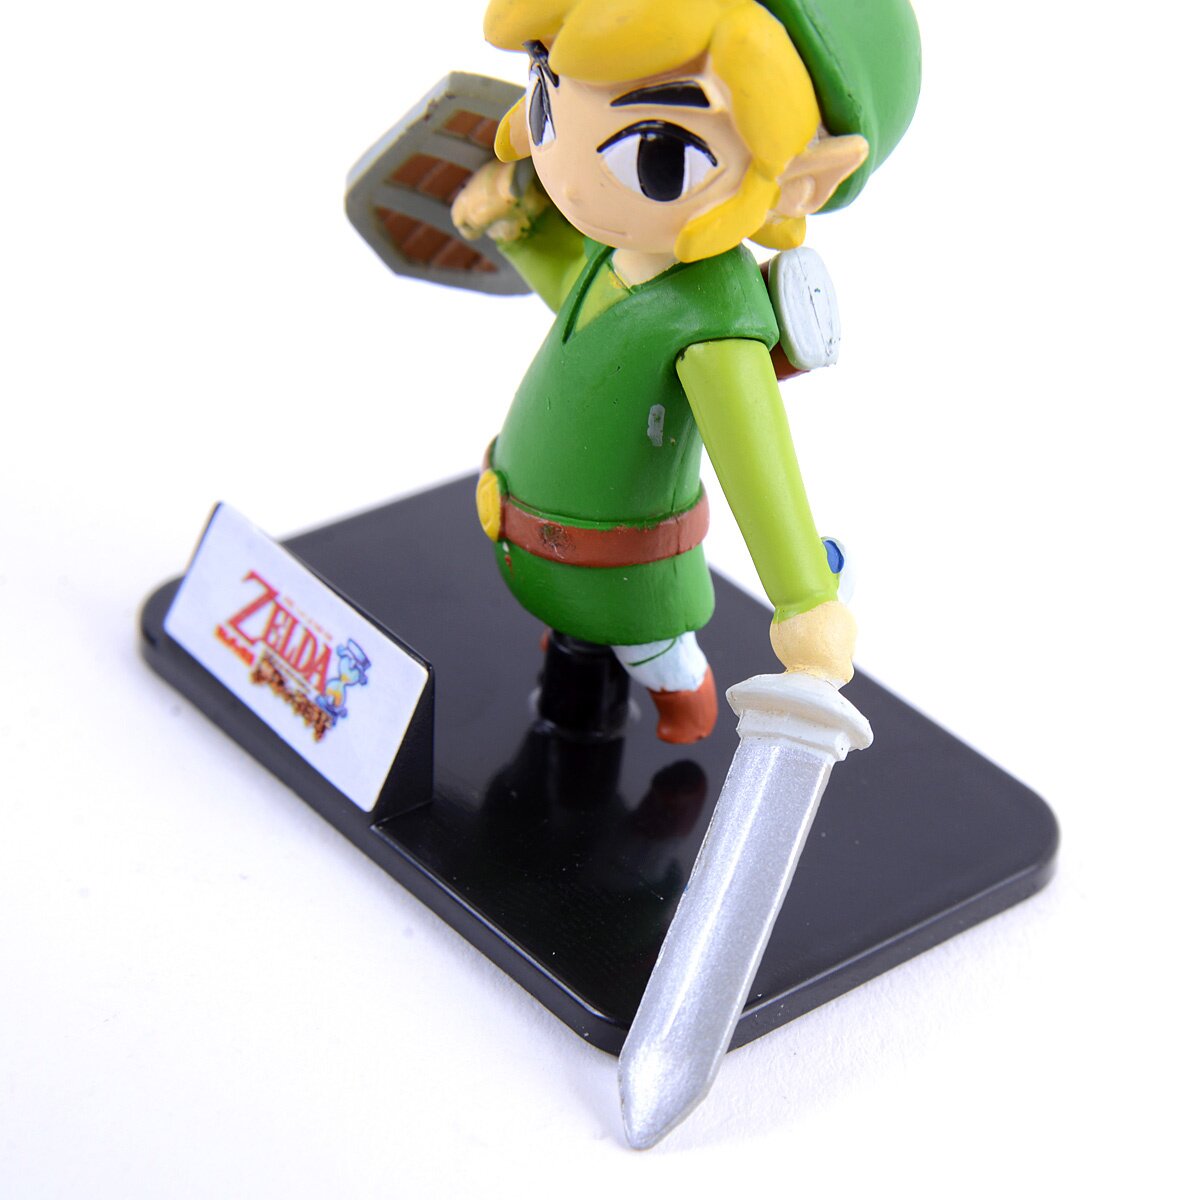 Legend of Zelda Figure Buying Guide –